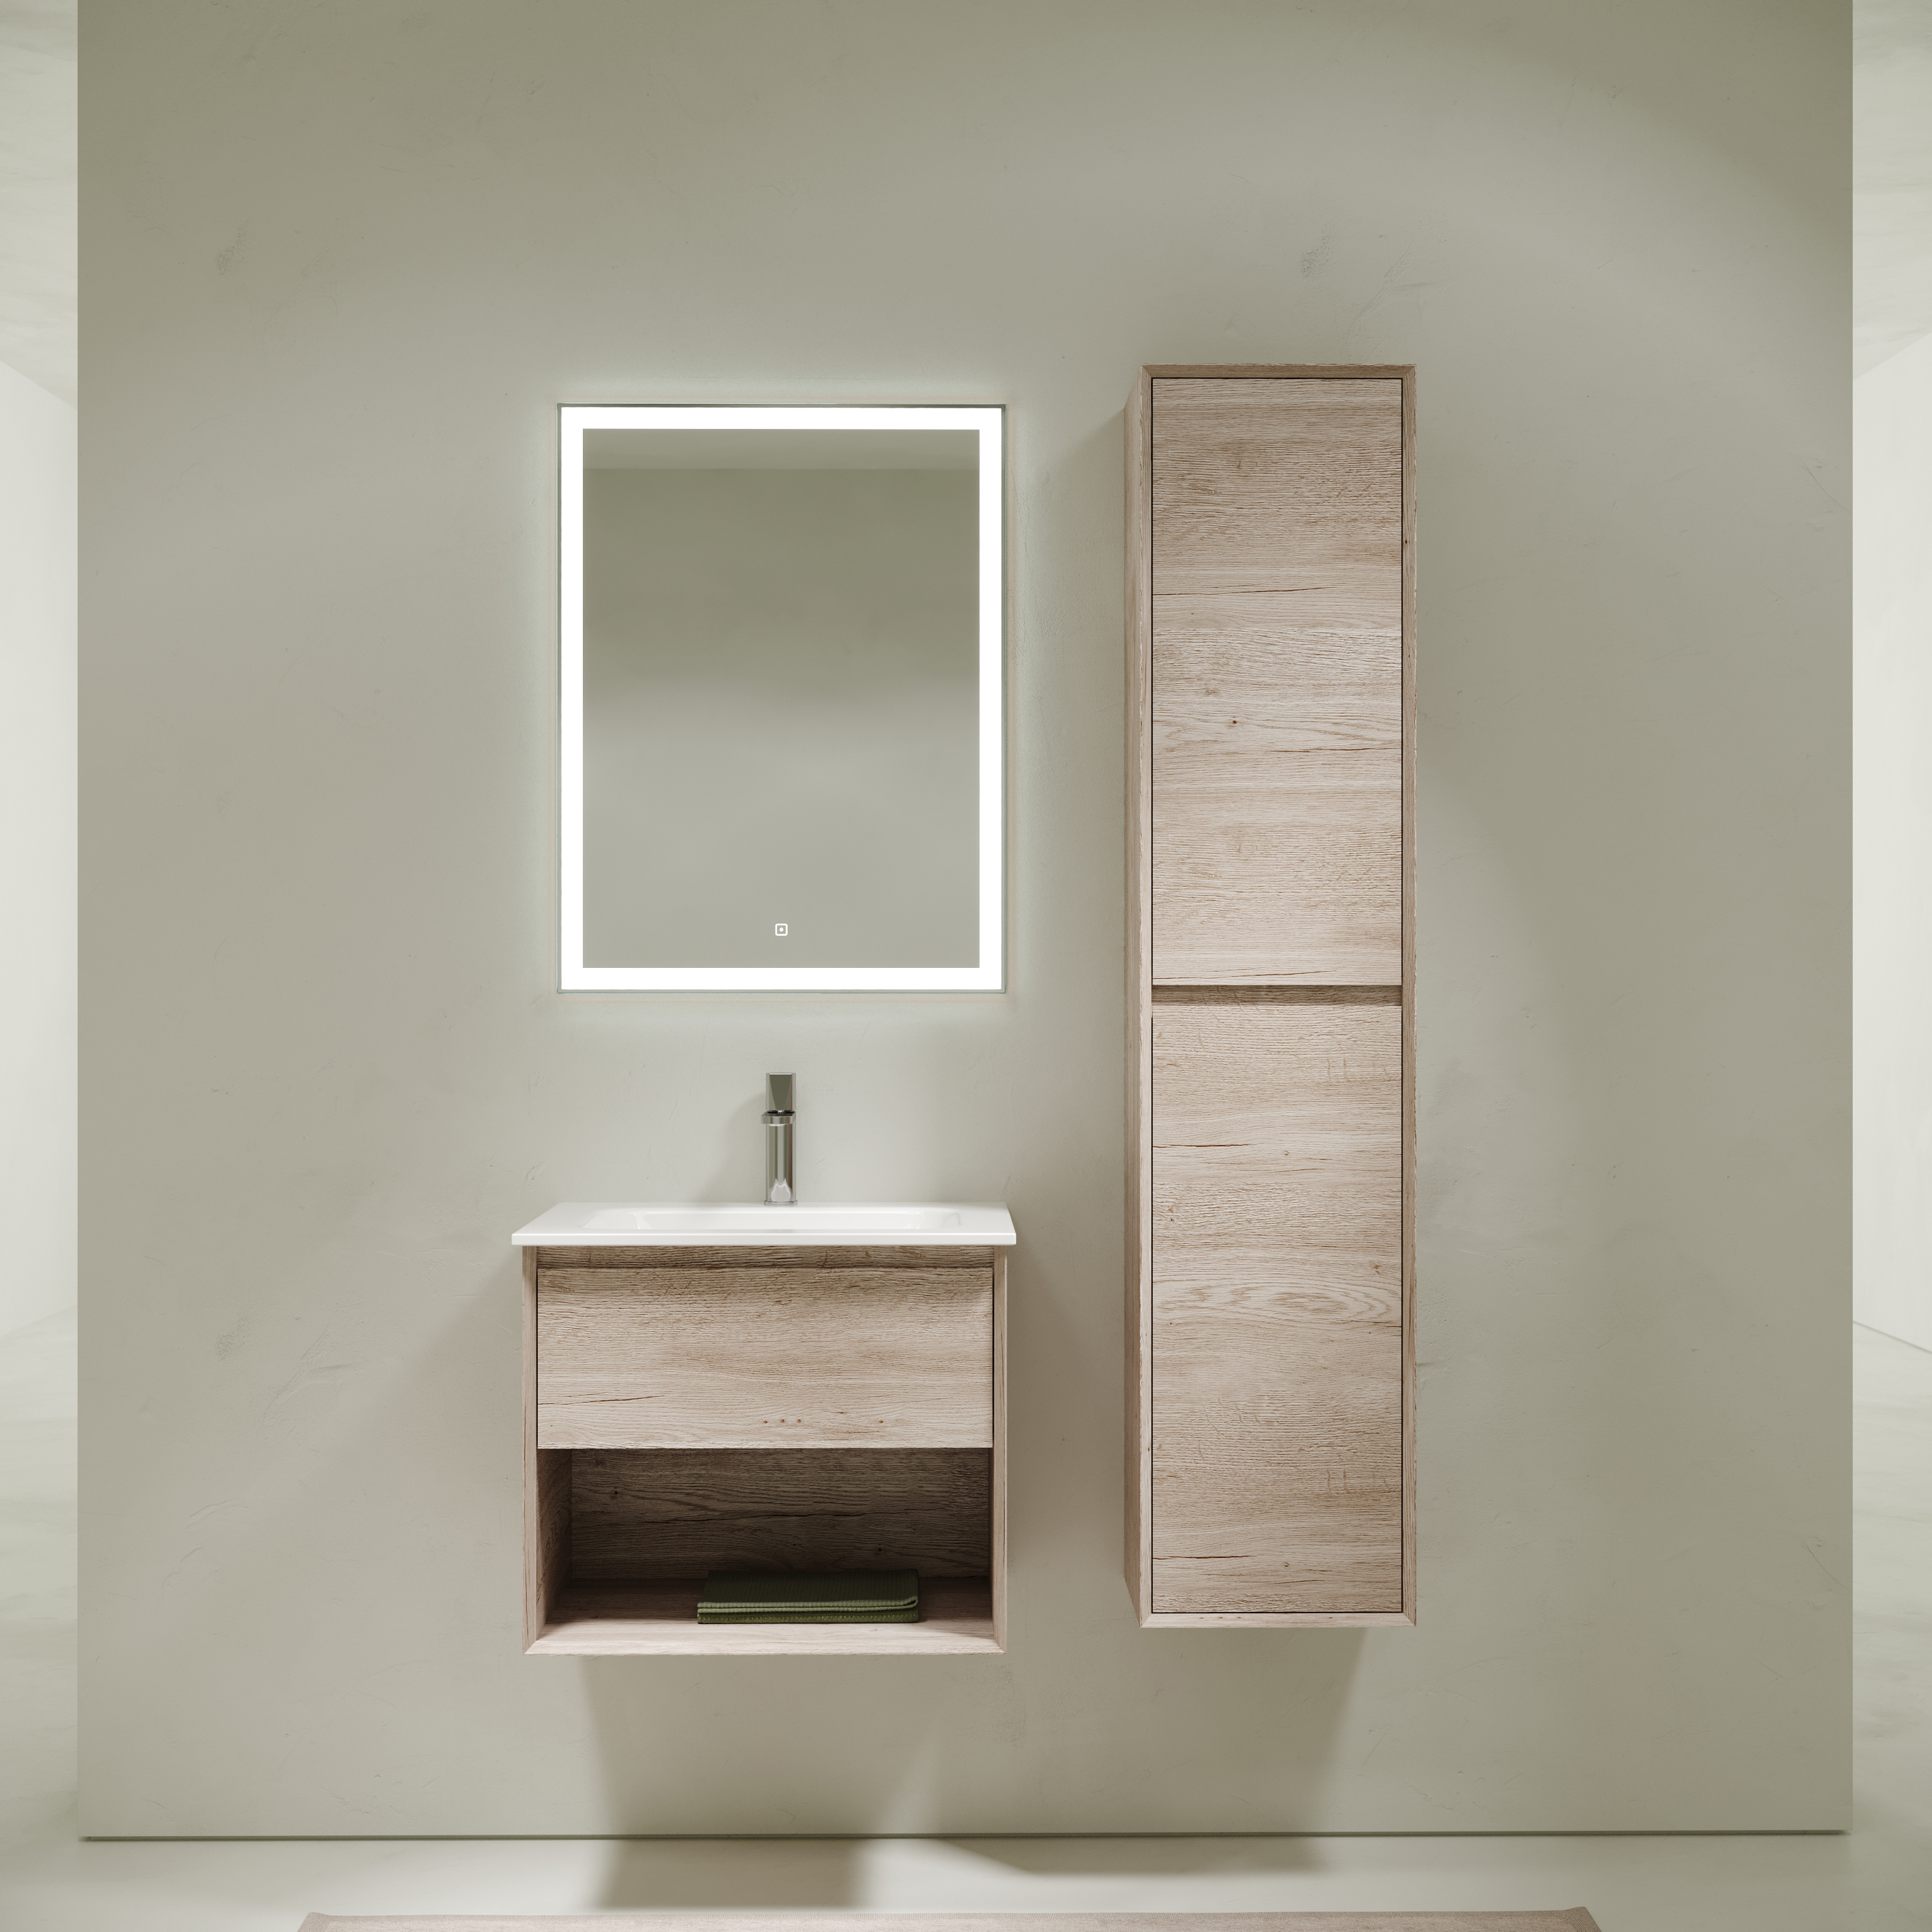 Мебель для ванной комнаты Sancos Marmi 1.0 60 см дуб галифакс натуральный, цвет коричневый MR1.060EG - фото 1